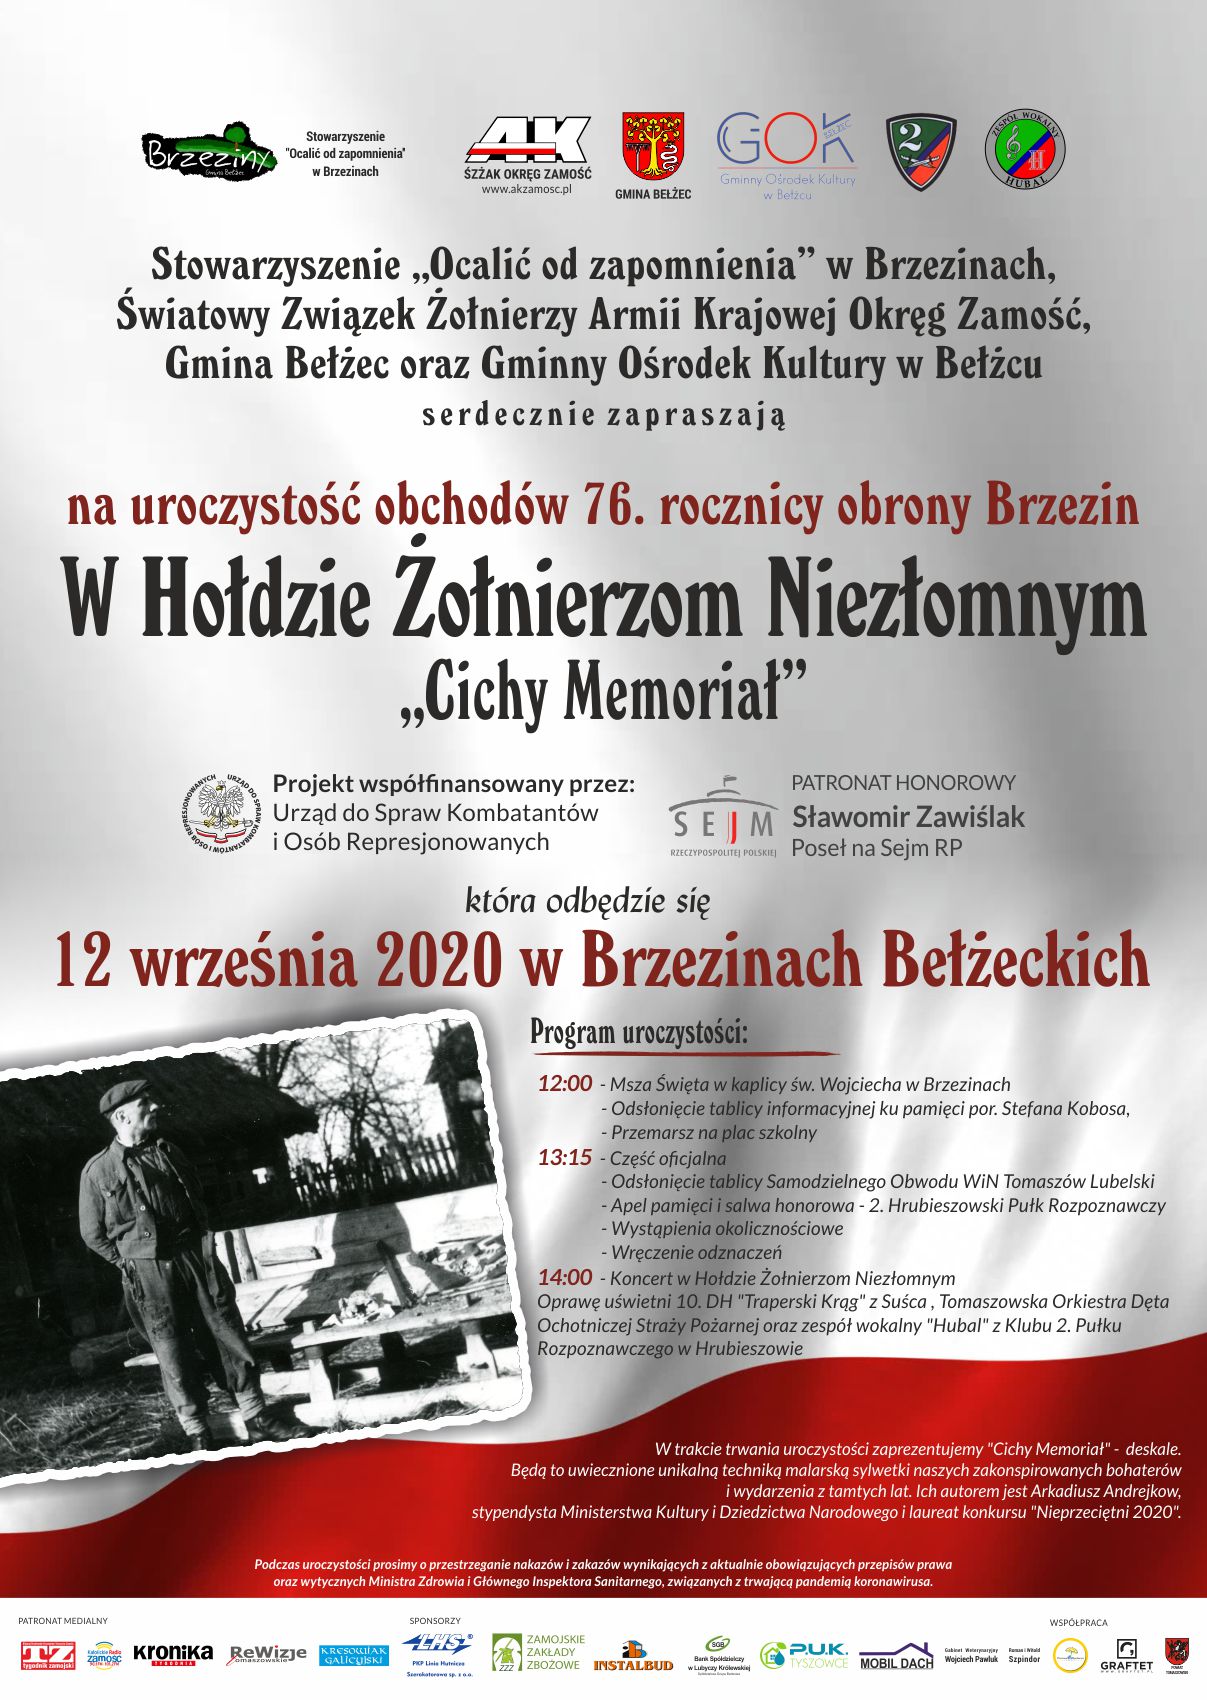 Plakat na uroczystość obchodów 76. rocznicy obrony Brzezin „W Hołdzie Żołnierzom Niezłomnym – Cichy Memoriał” - 12 września br. w Brzezinach Bełżeckich.